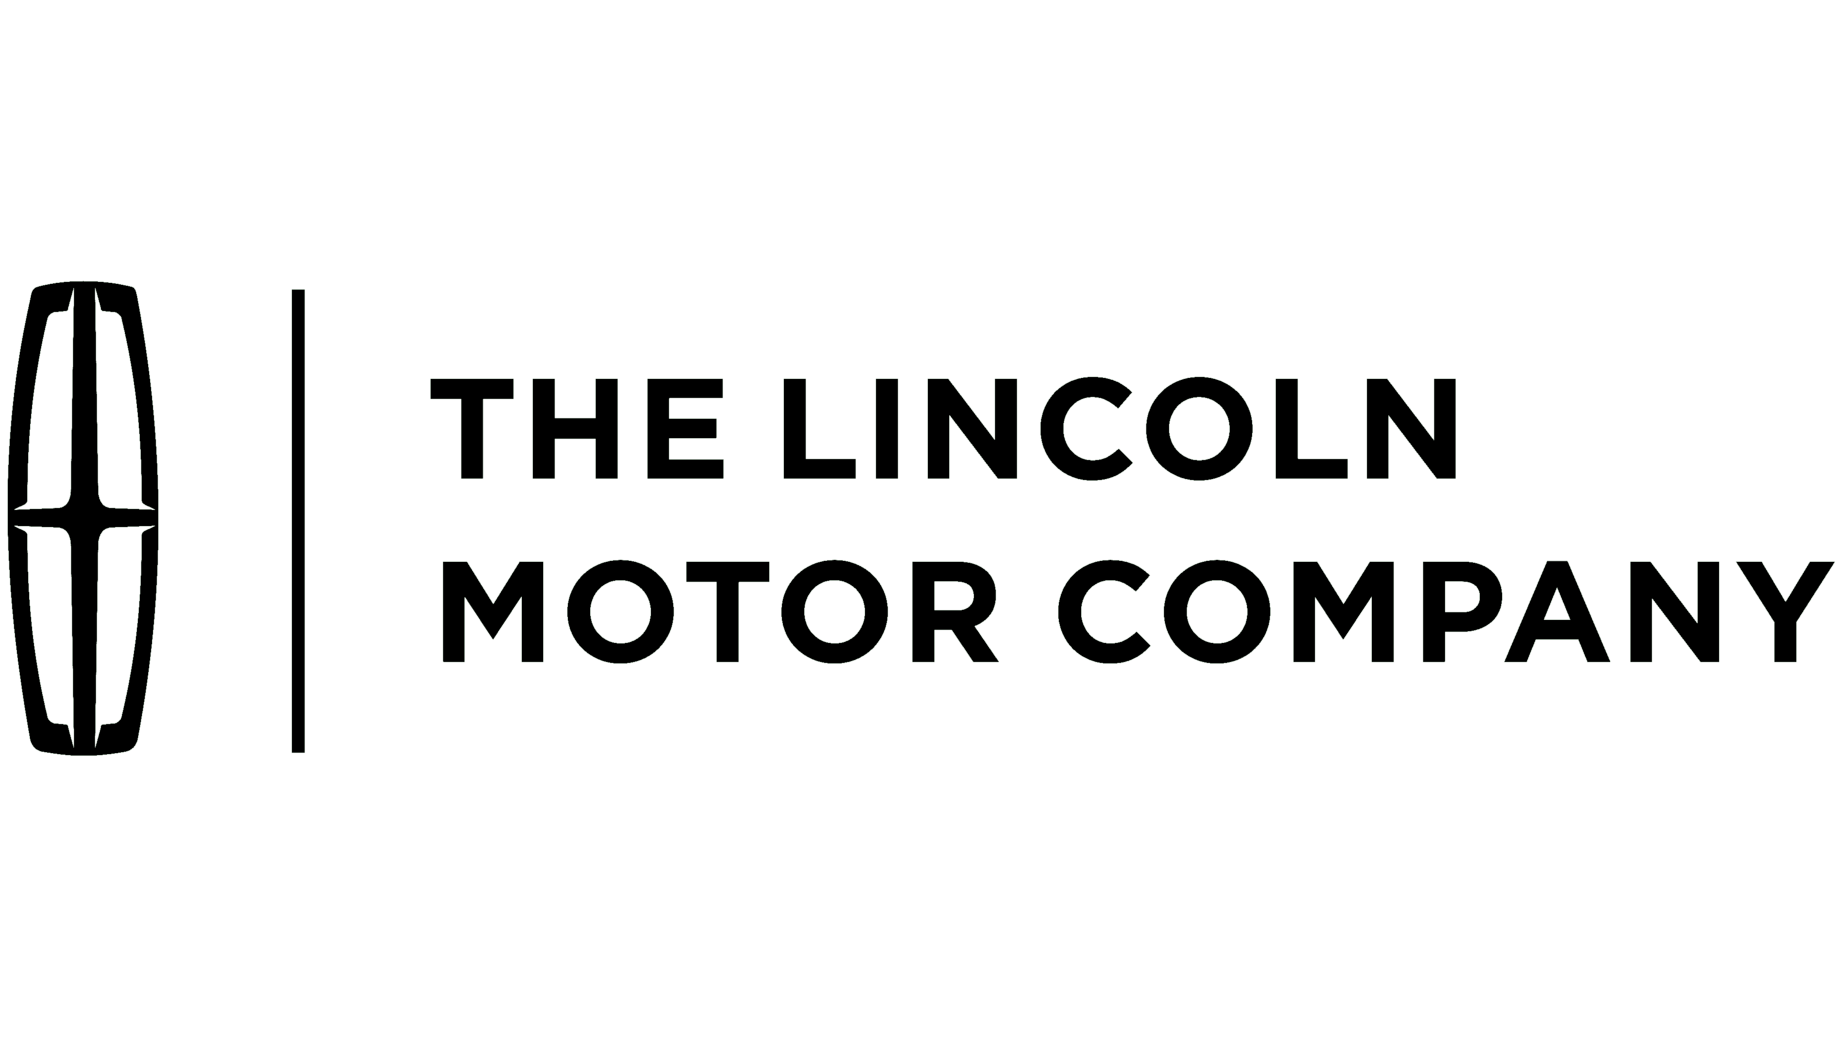 Lincoln automobile sign 2012 present